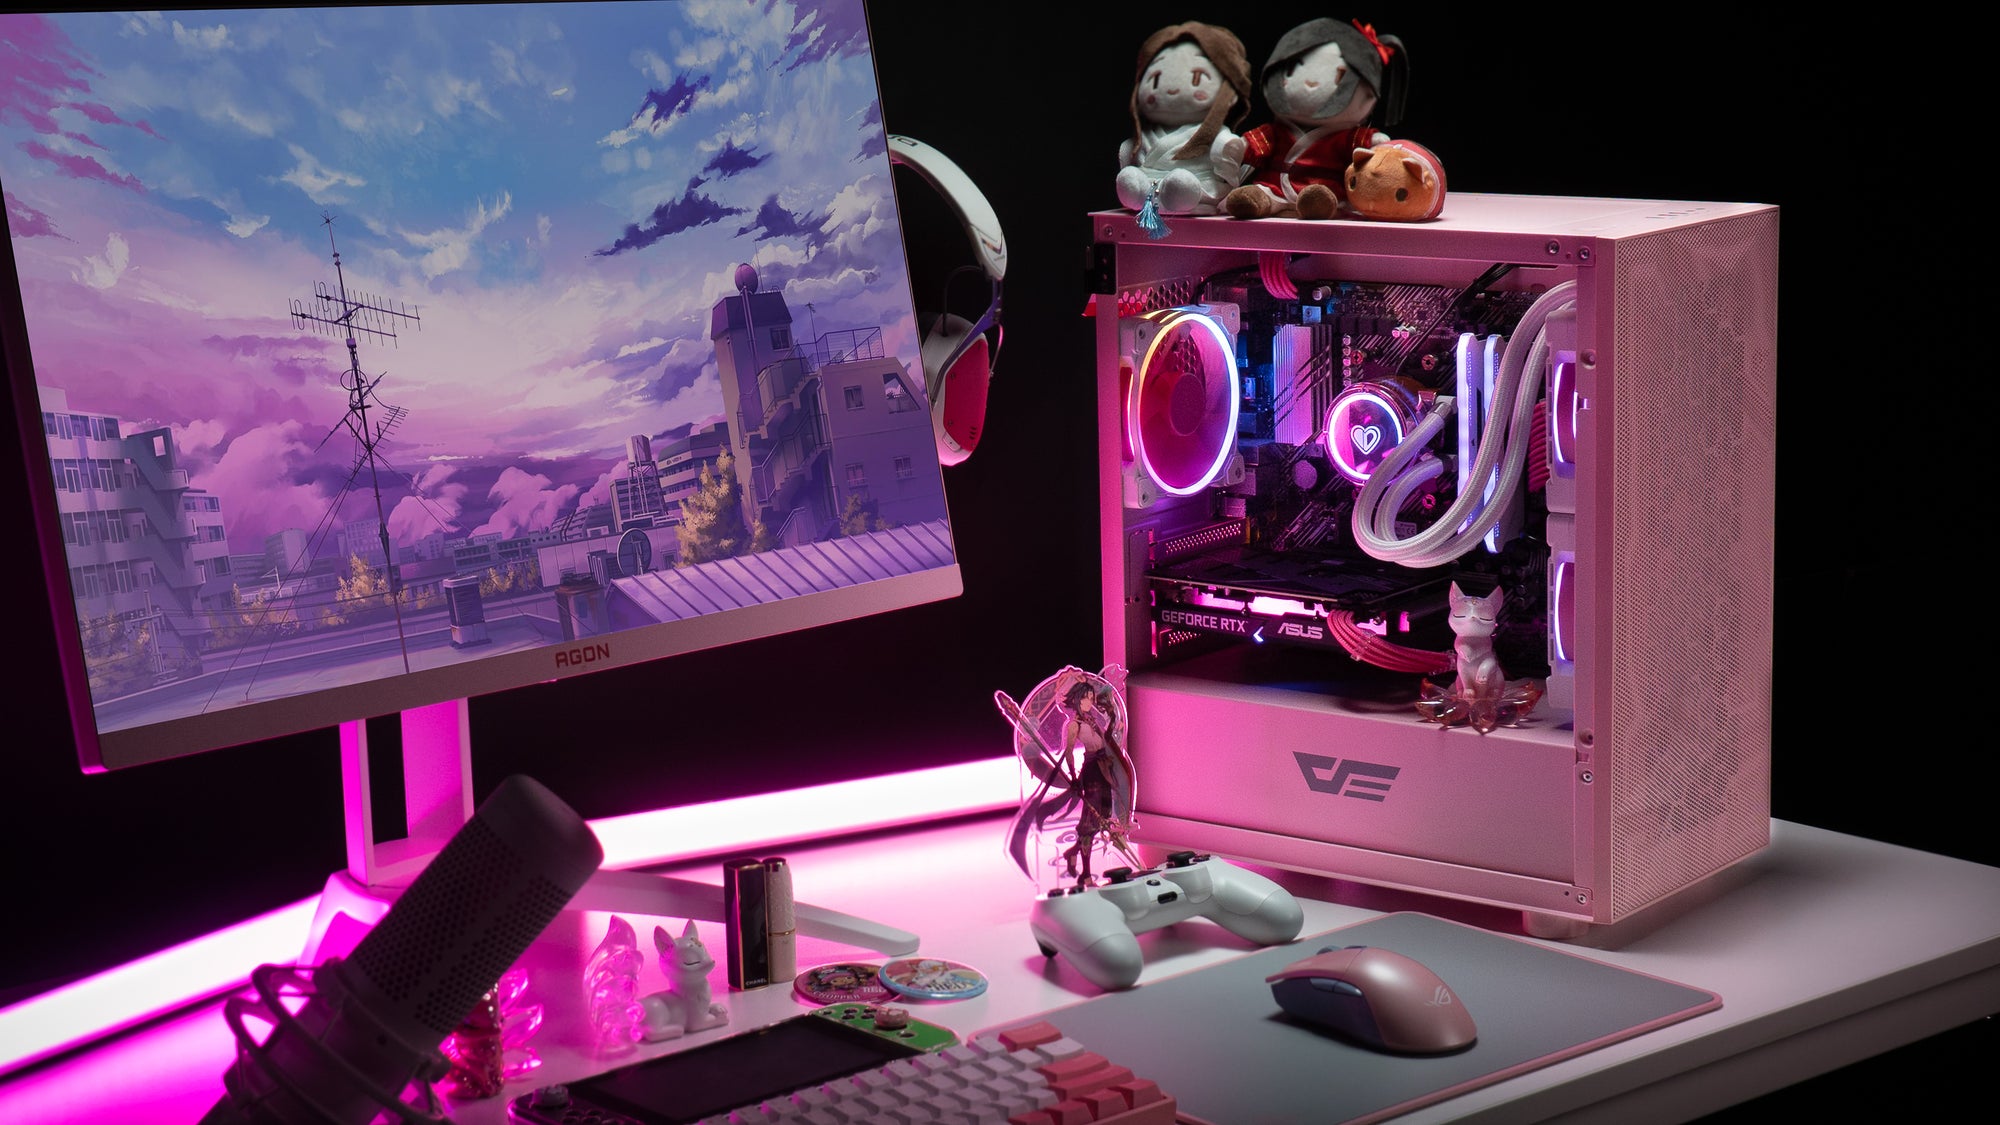 Pink Computer